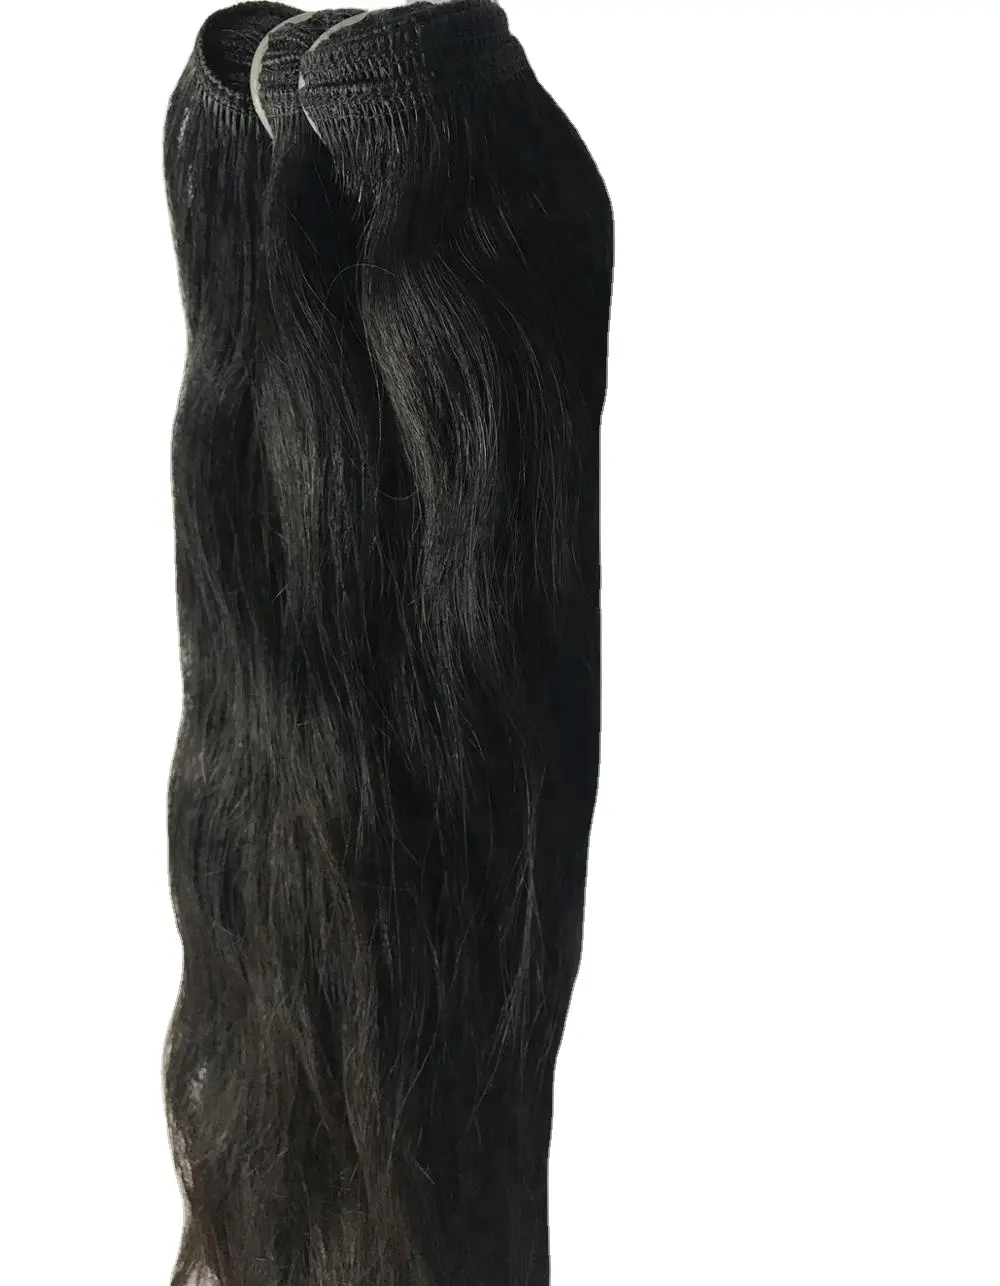 生のインドのバージンの人間の髪の製品安い長い34インチのストレートキューティクルアライメント人間の髪の束自然な髪の延長